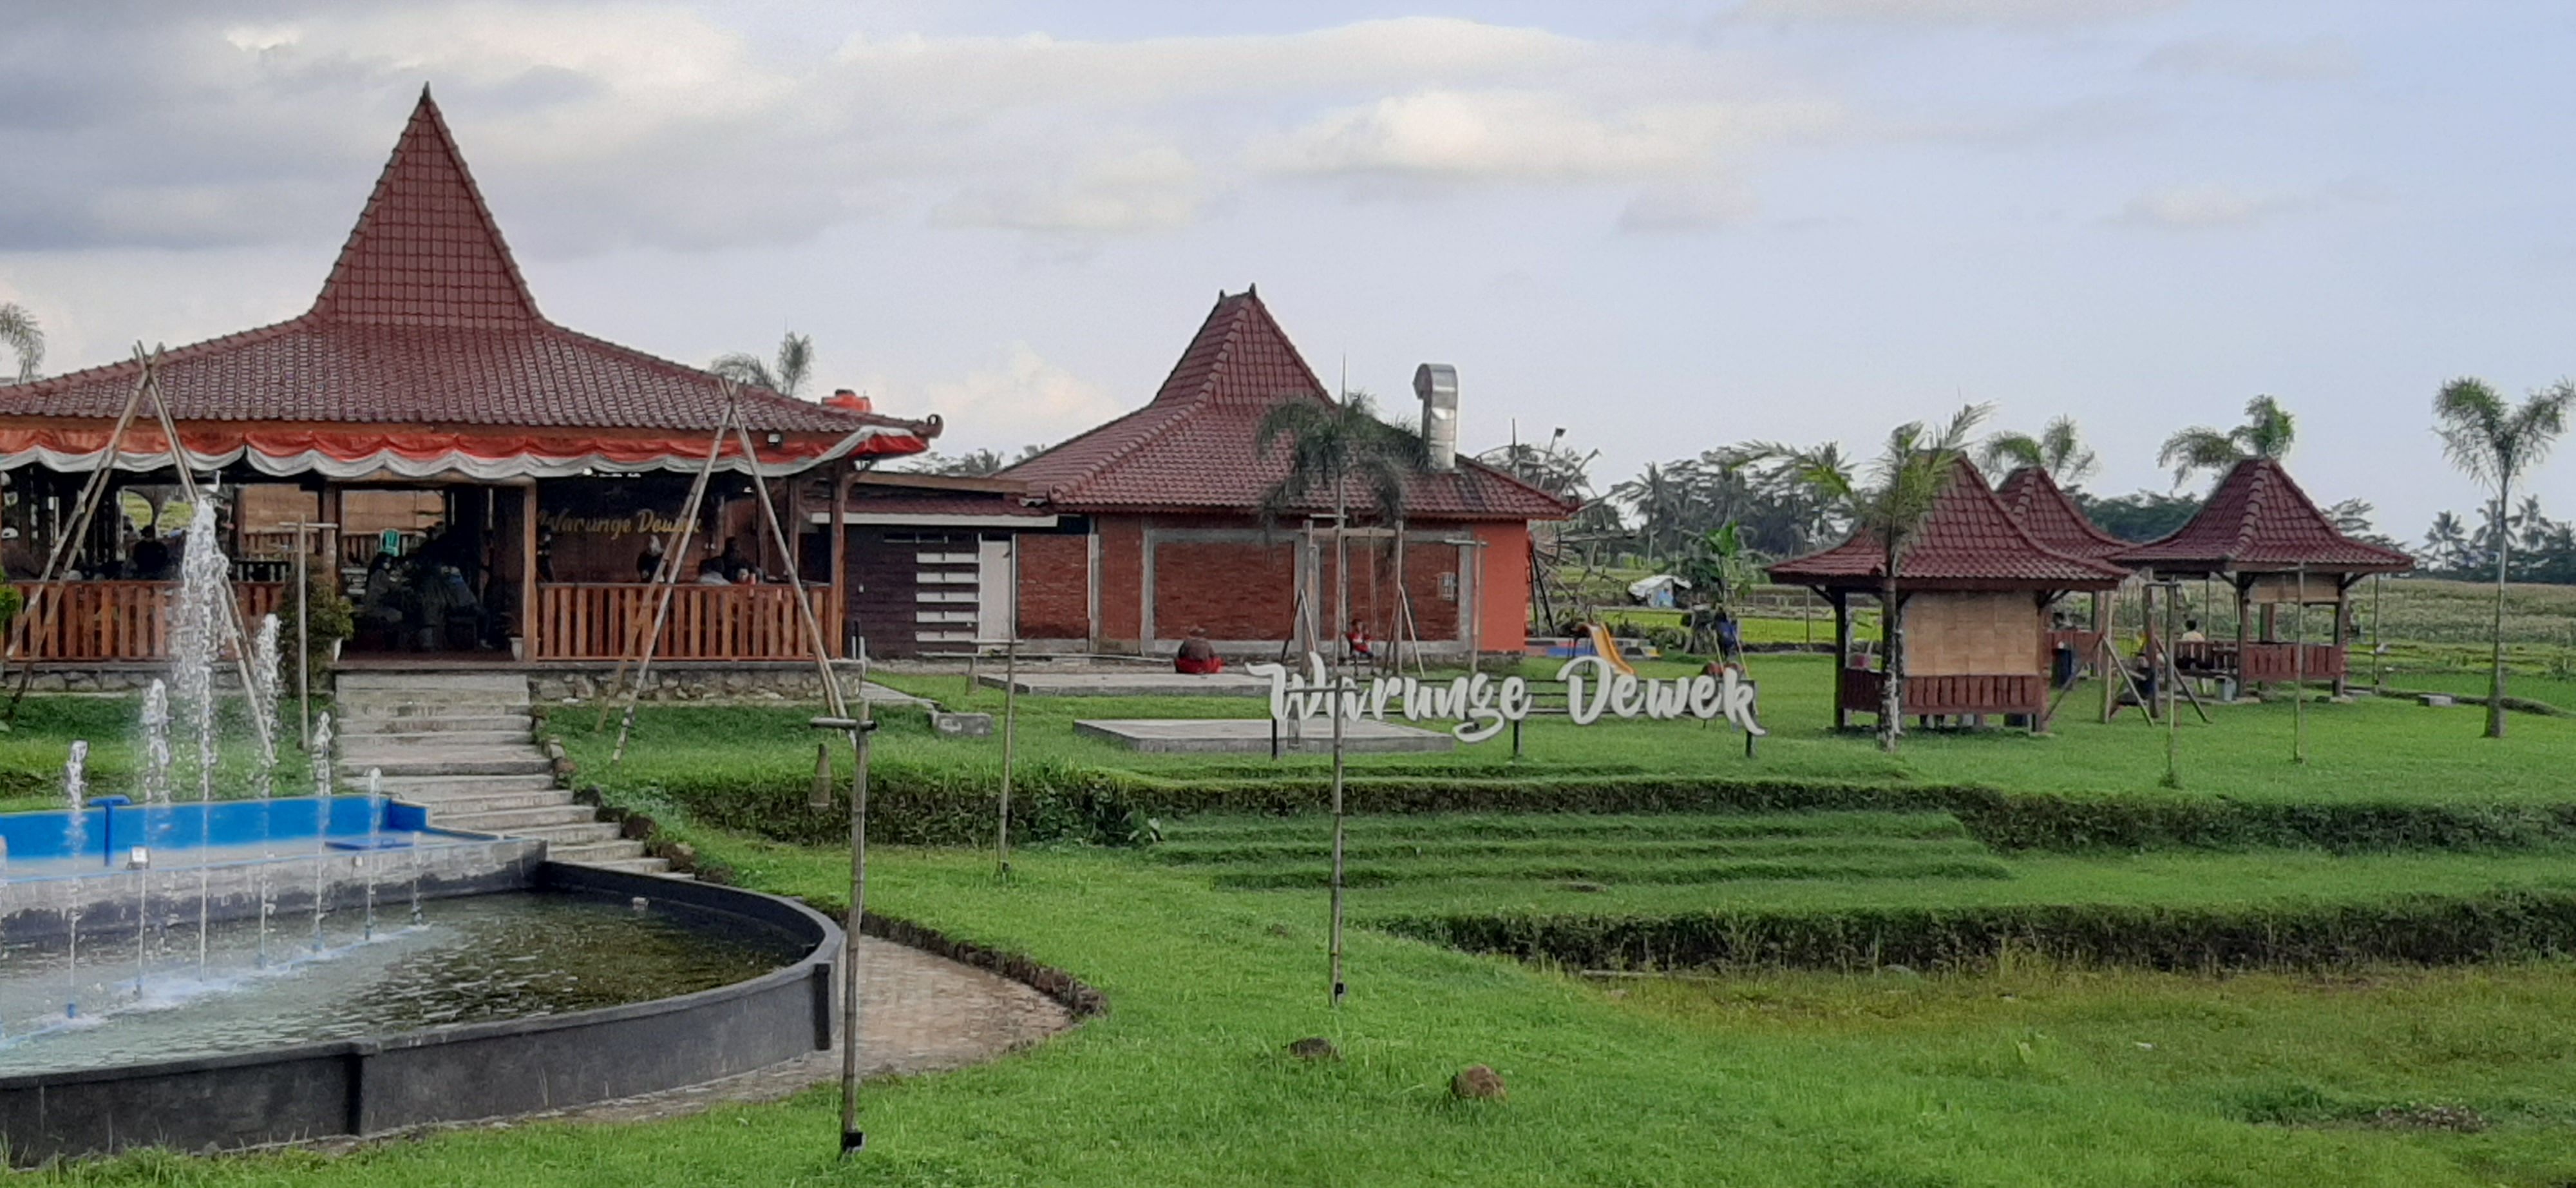 Tempat makan keluarga bernuansa alam 'Warunge Dewek' di Purwokerto